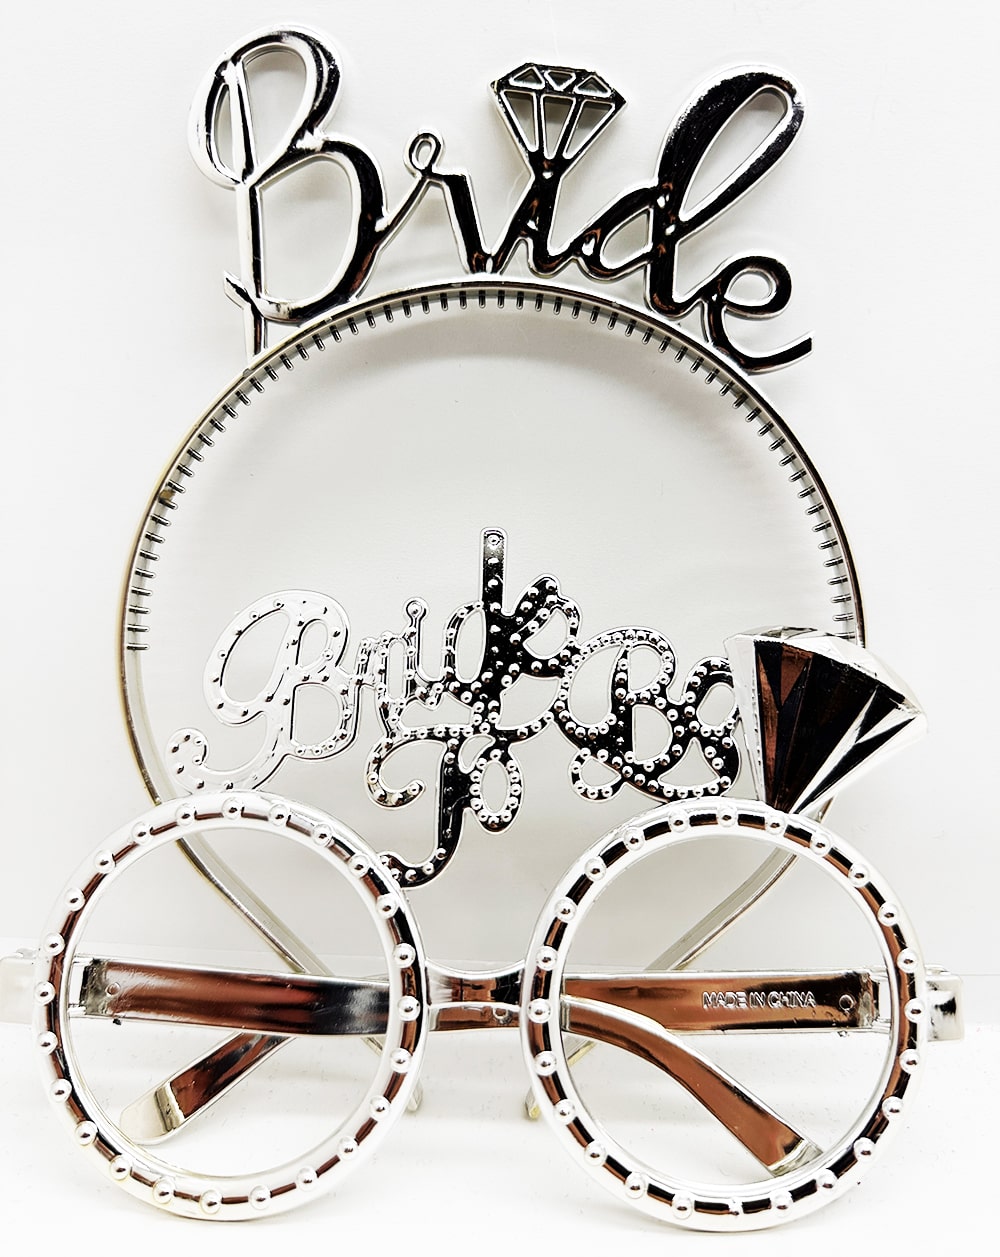 Bride Yazılı Taç ve Bride To Be Yazılı Gözlük Seti Gümüş Renk  (Lisinya)